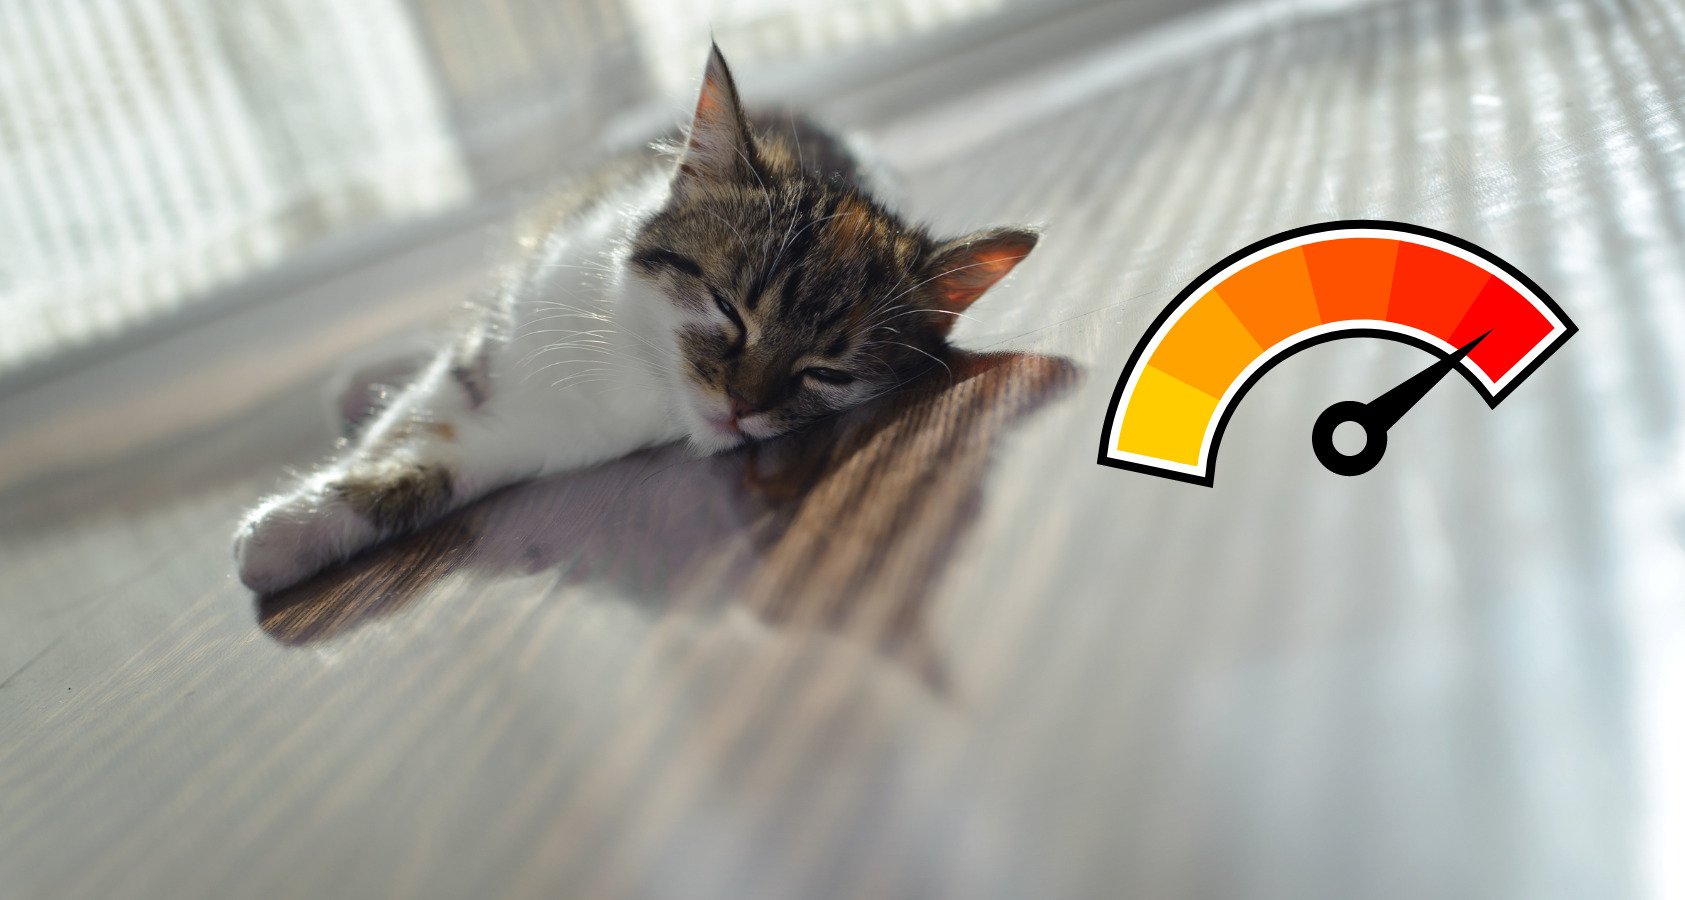 cat in heat close to floor